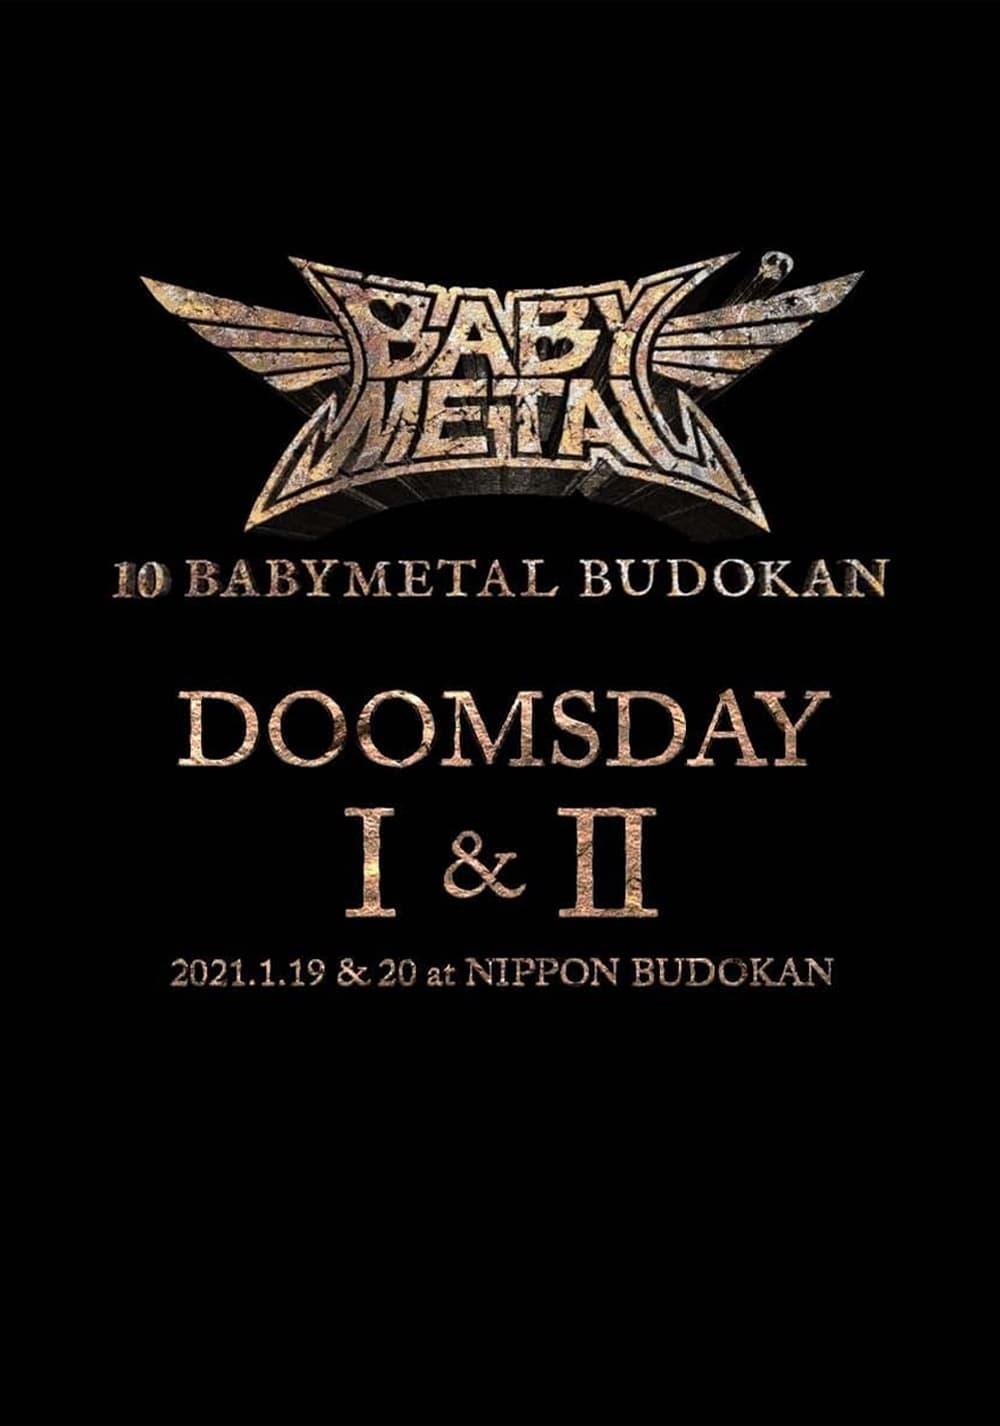 10 BABYMETAL BUDOKAN - DOOMSDAY I & II poster